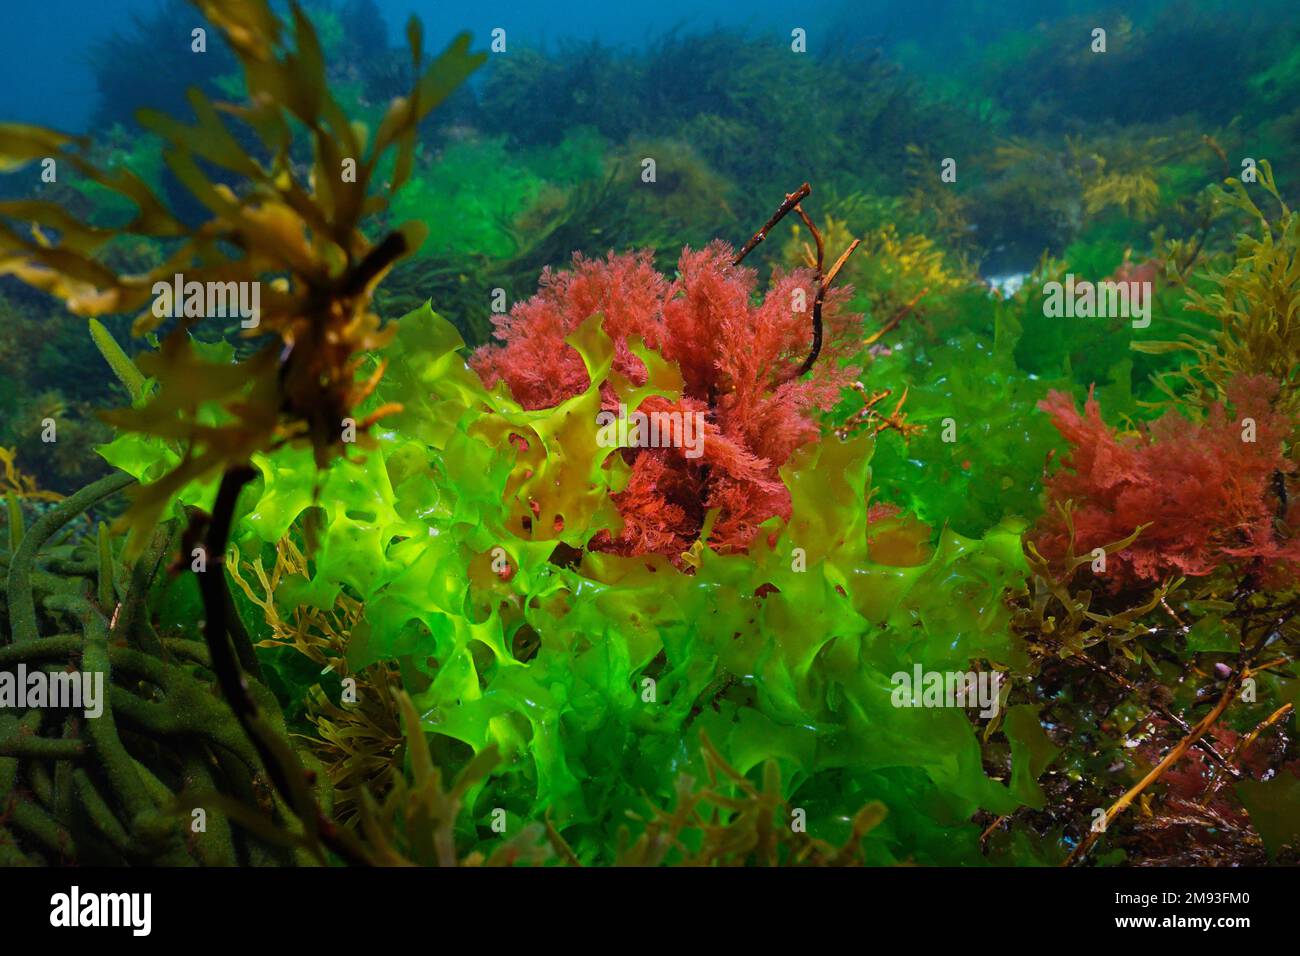 Green alga Ulva lactuca and red alga Plocamium cartilagineum, underwater in the Atlantic ocean, Spain Stock Photo